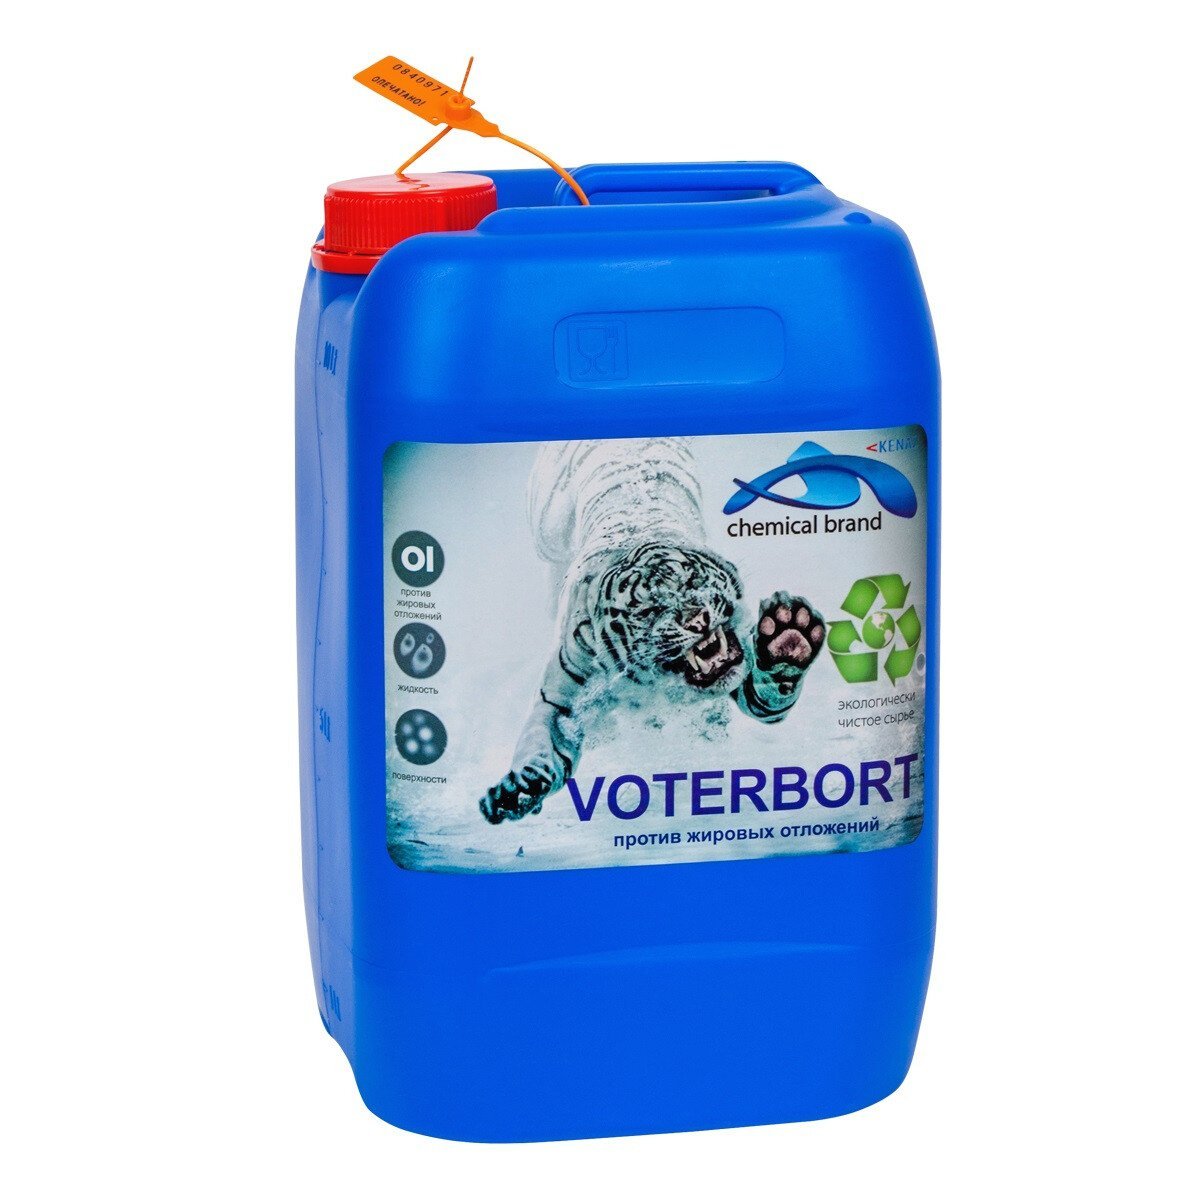 Жидкое средство для очистки ватерлинии Kenaz Voterbort 0.8л - 5л.